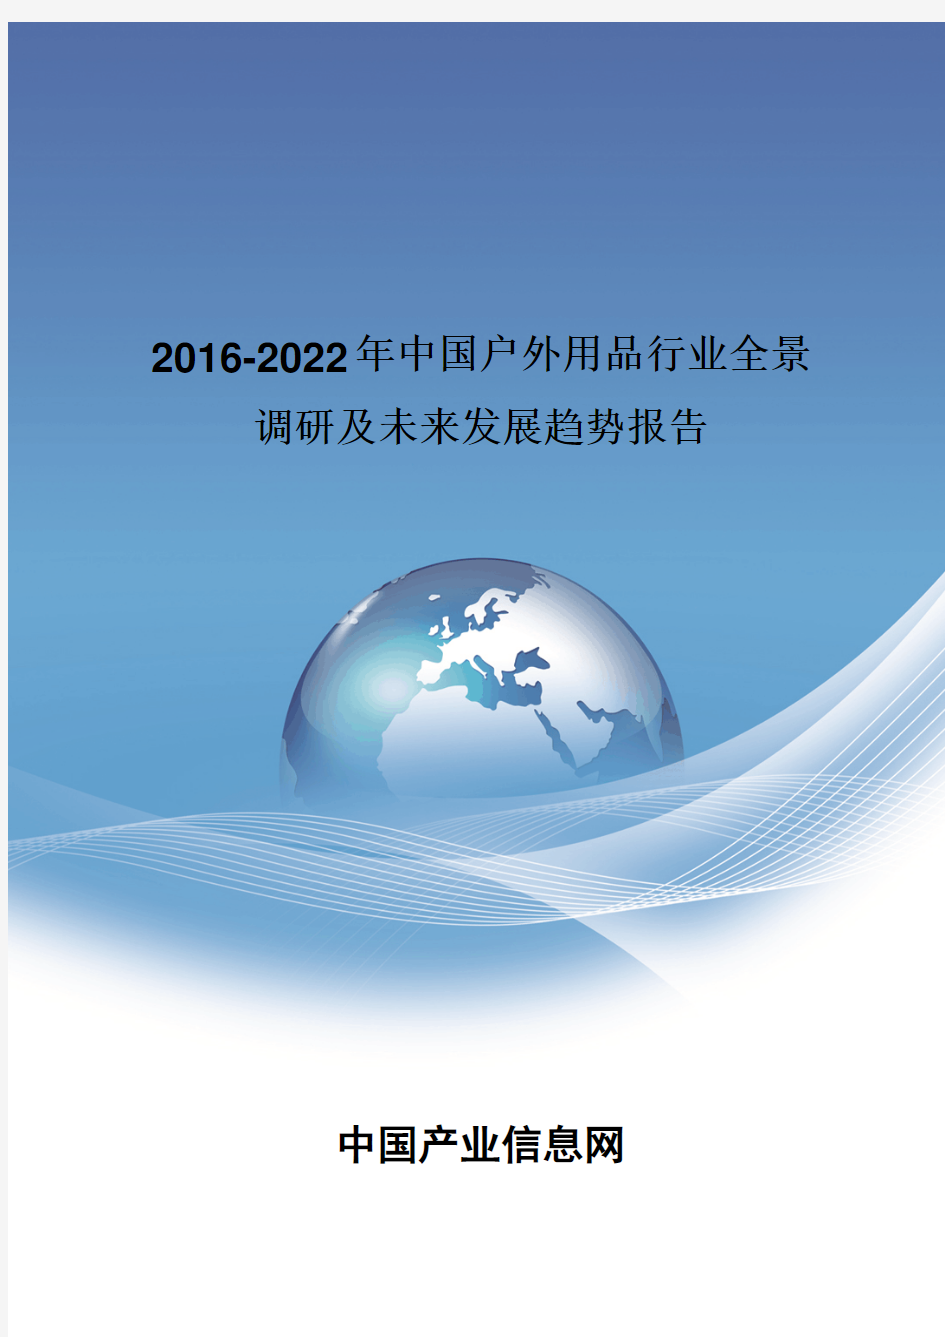 2016-2022年中国户外用品行业全景调研报告